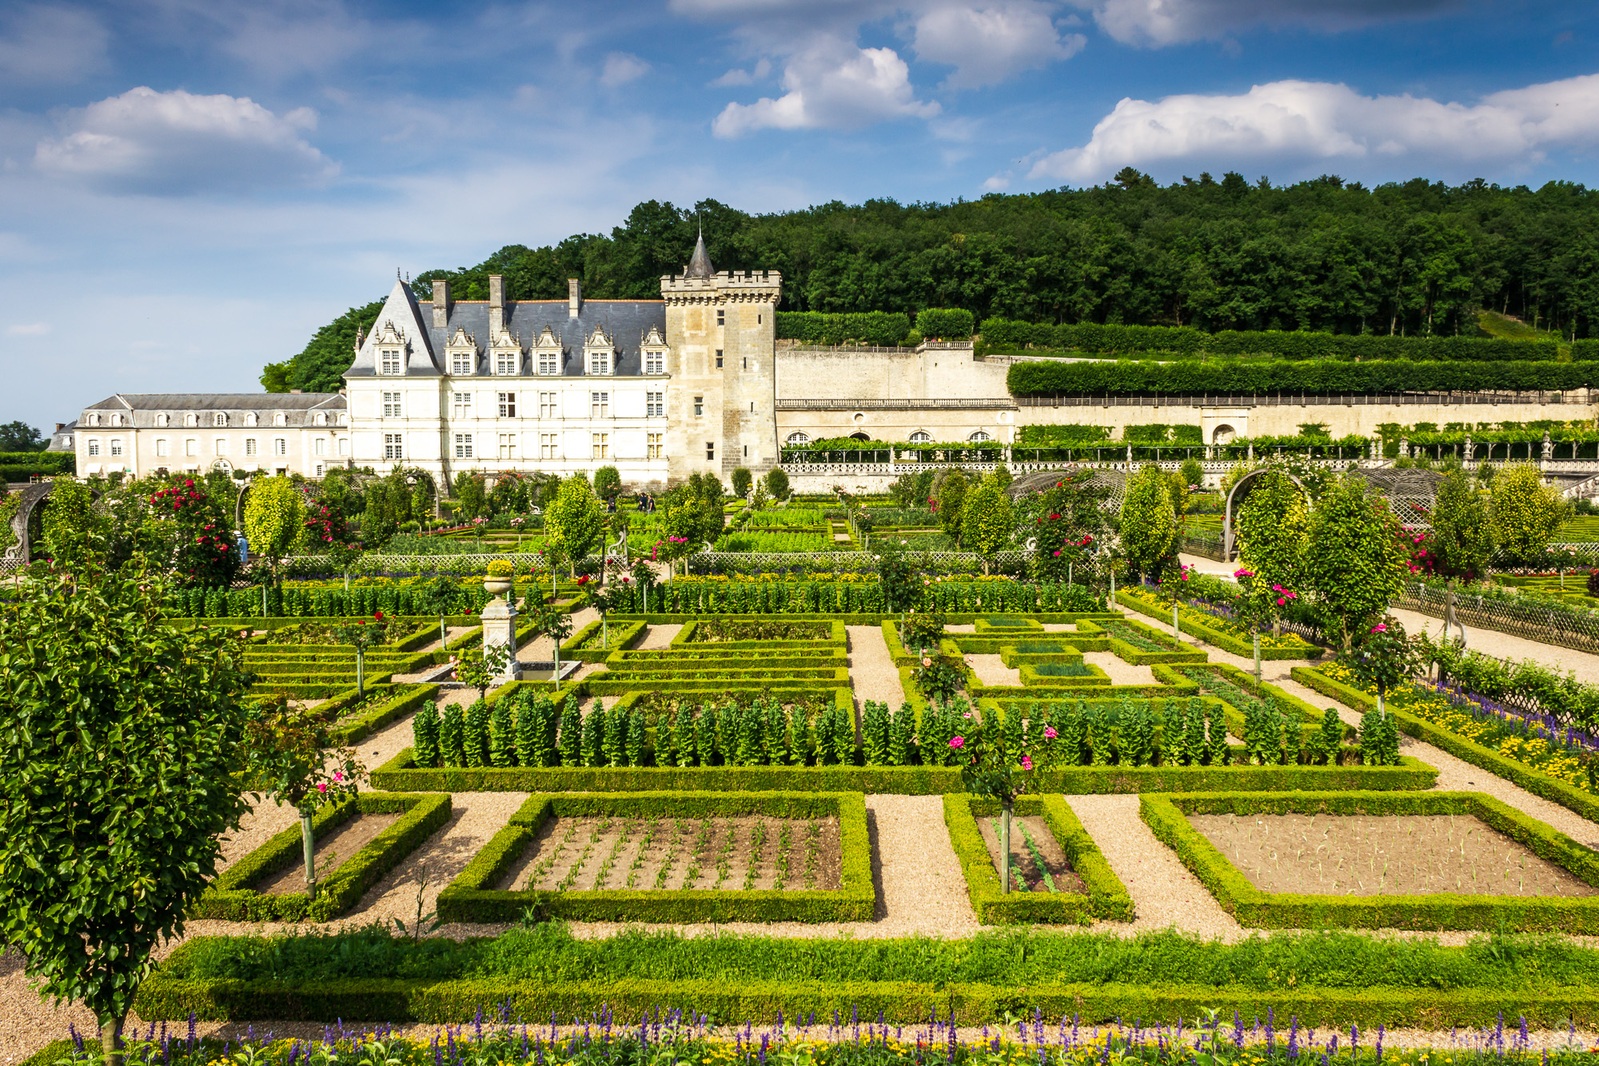 Image of Chateau de Villandry by Carol Henson